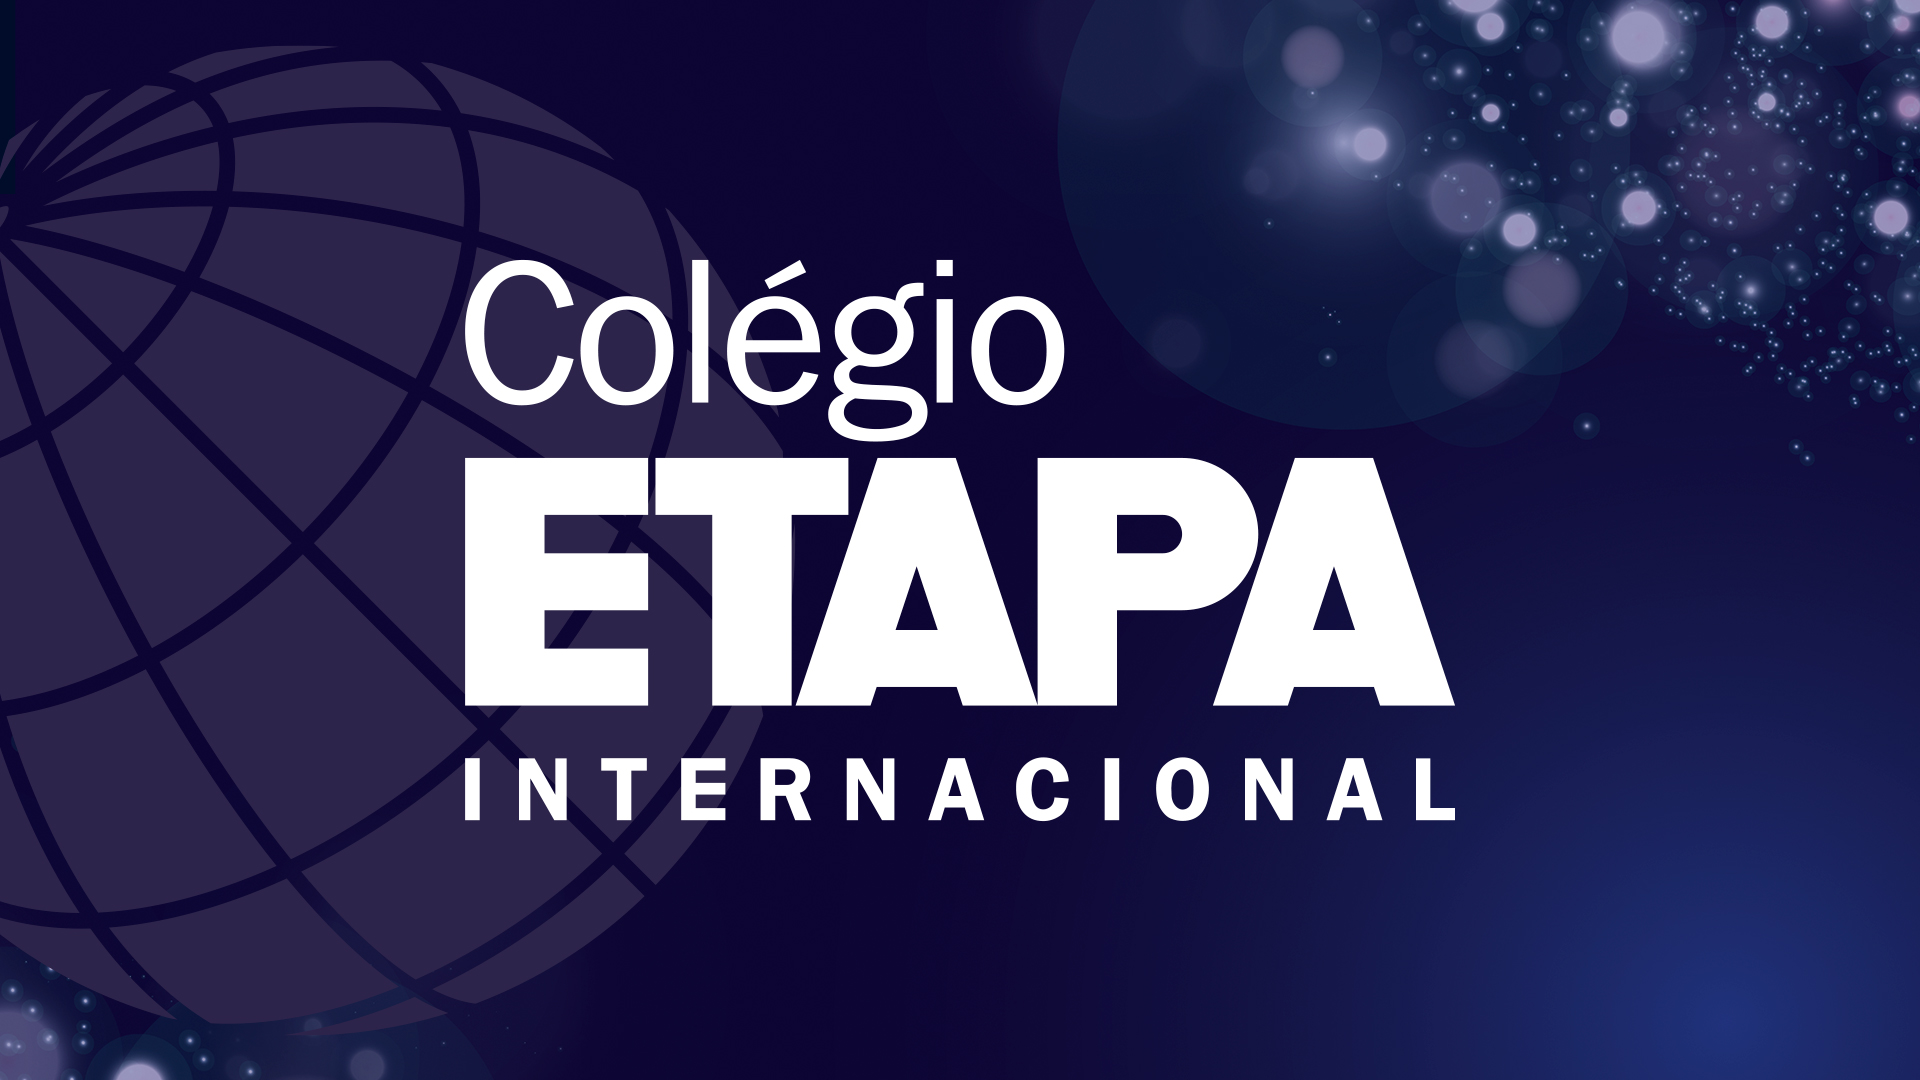 Colégio Etapa lança nova turma de estudos internacionais, com a oferta do AP já na 1ª série do Ensino Médio.